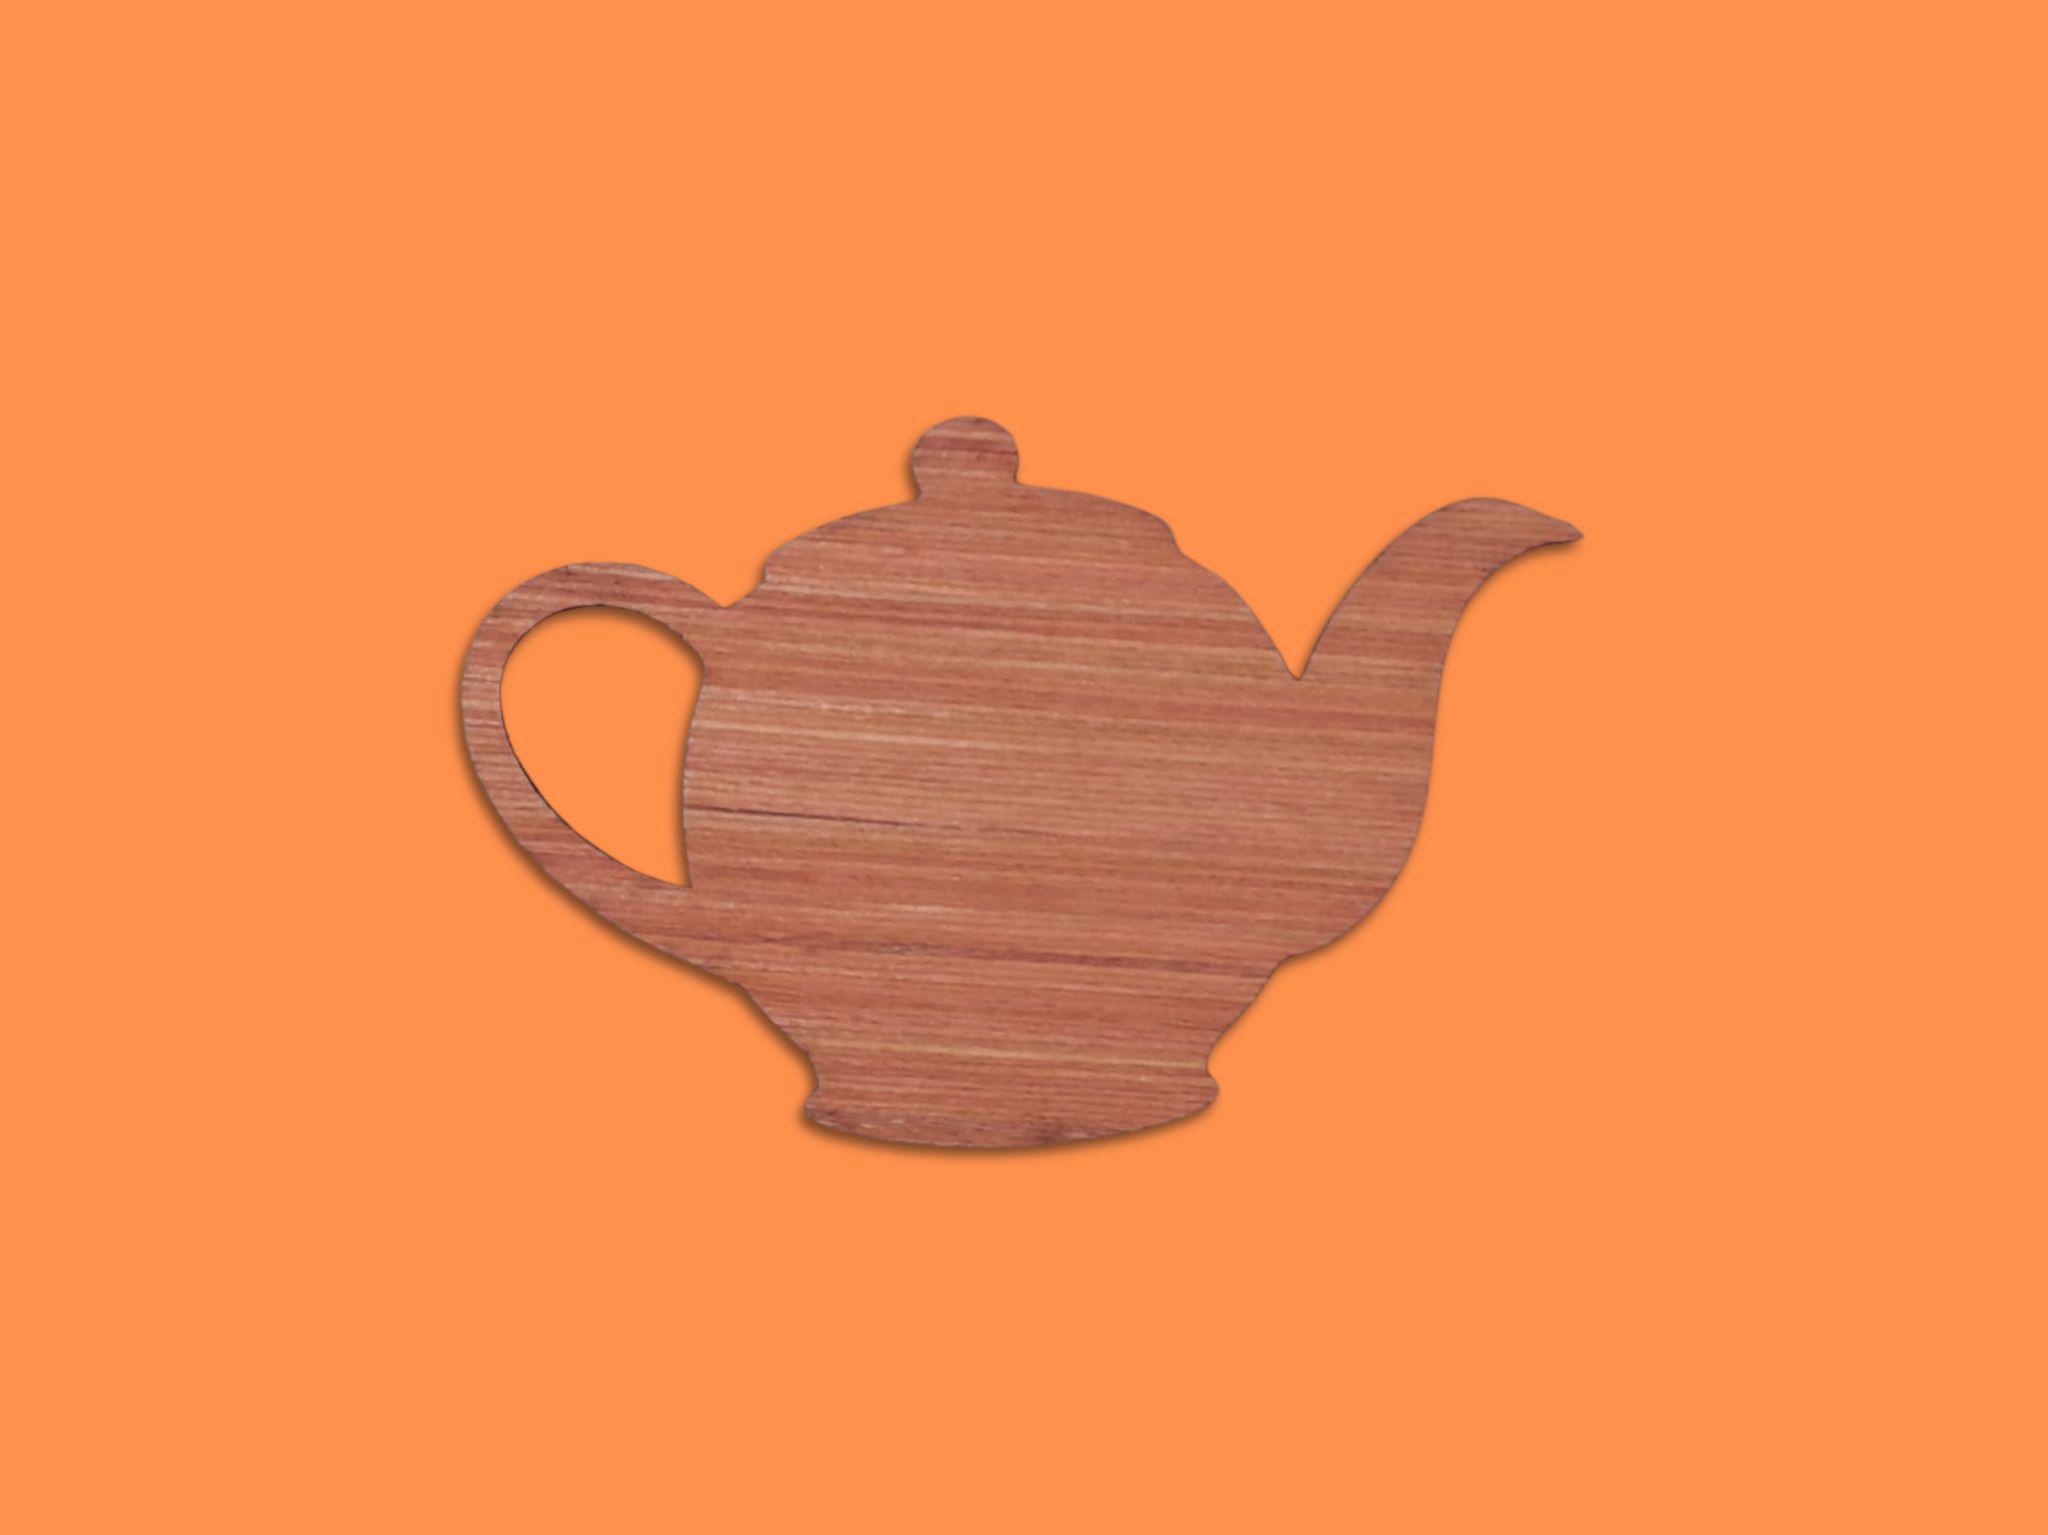 Laser Cut Wooden Tea Kettle Cutout Free Vector